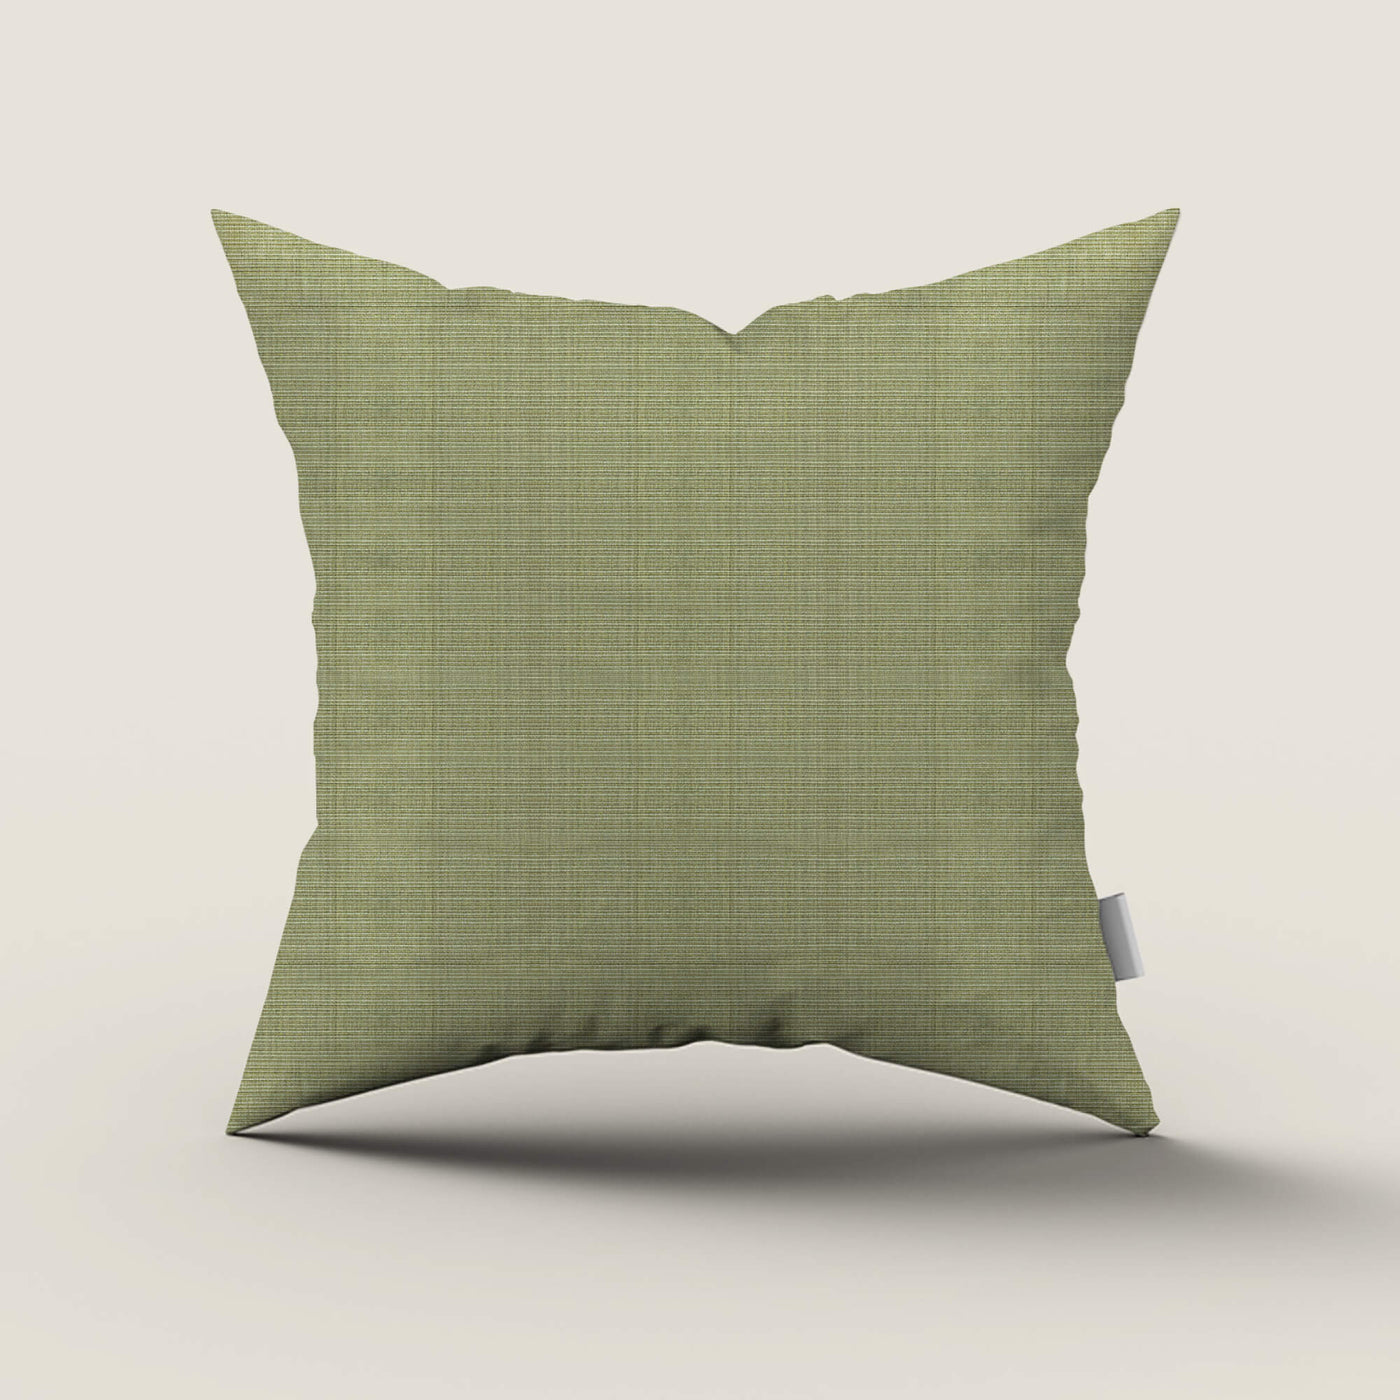 PENGI Waterproof Outdoor Throw Pillows 1 Pcs - Bamboo